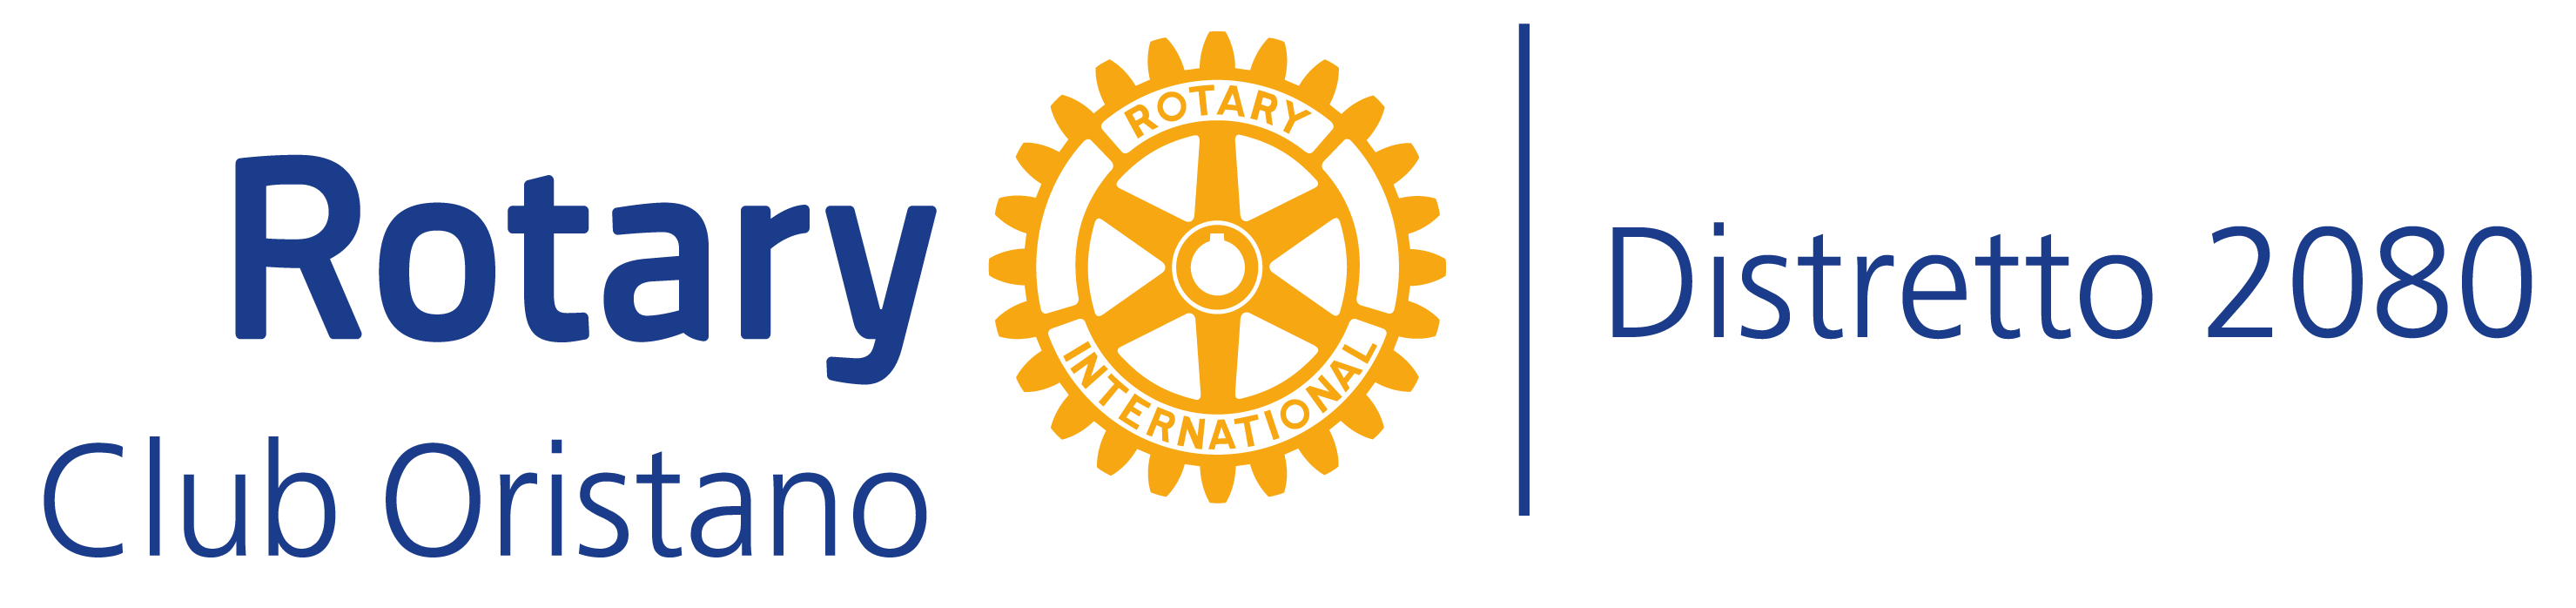 Premio miglior laureat* del Rotary Club Oristano